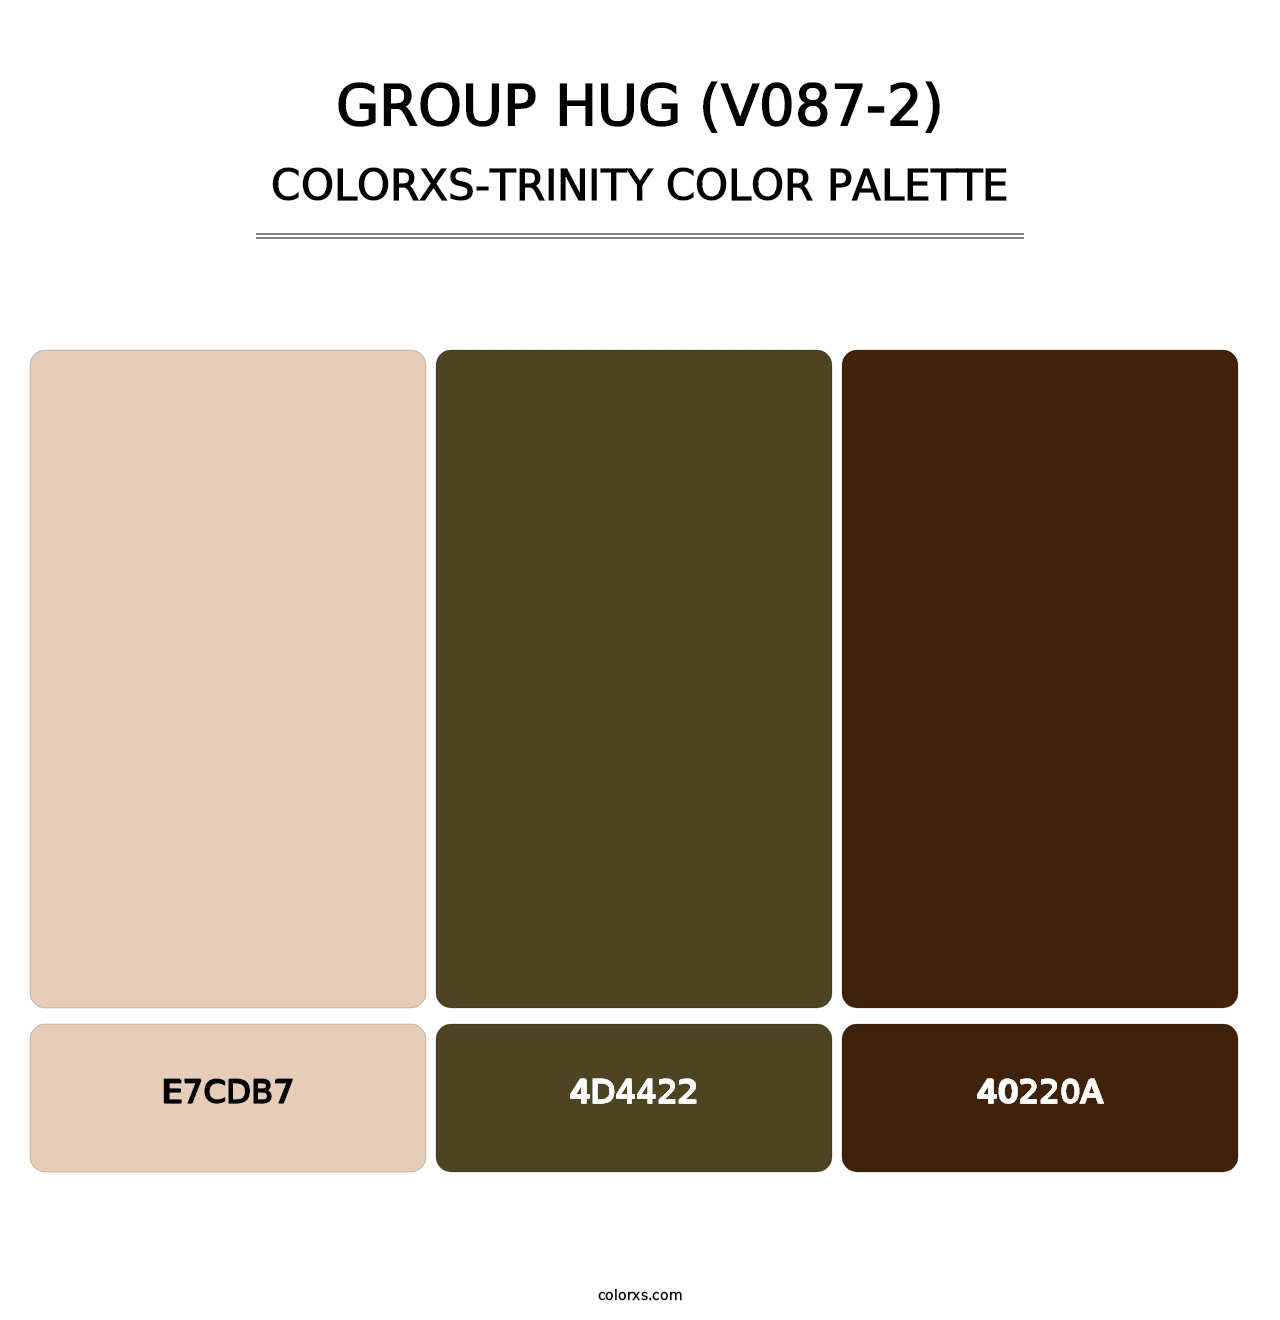 Group Hug (V087-2) - Colorxs Trinity Palette